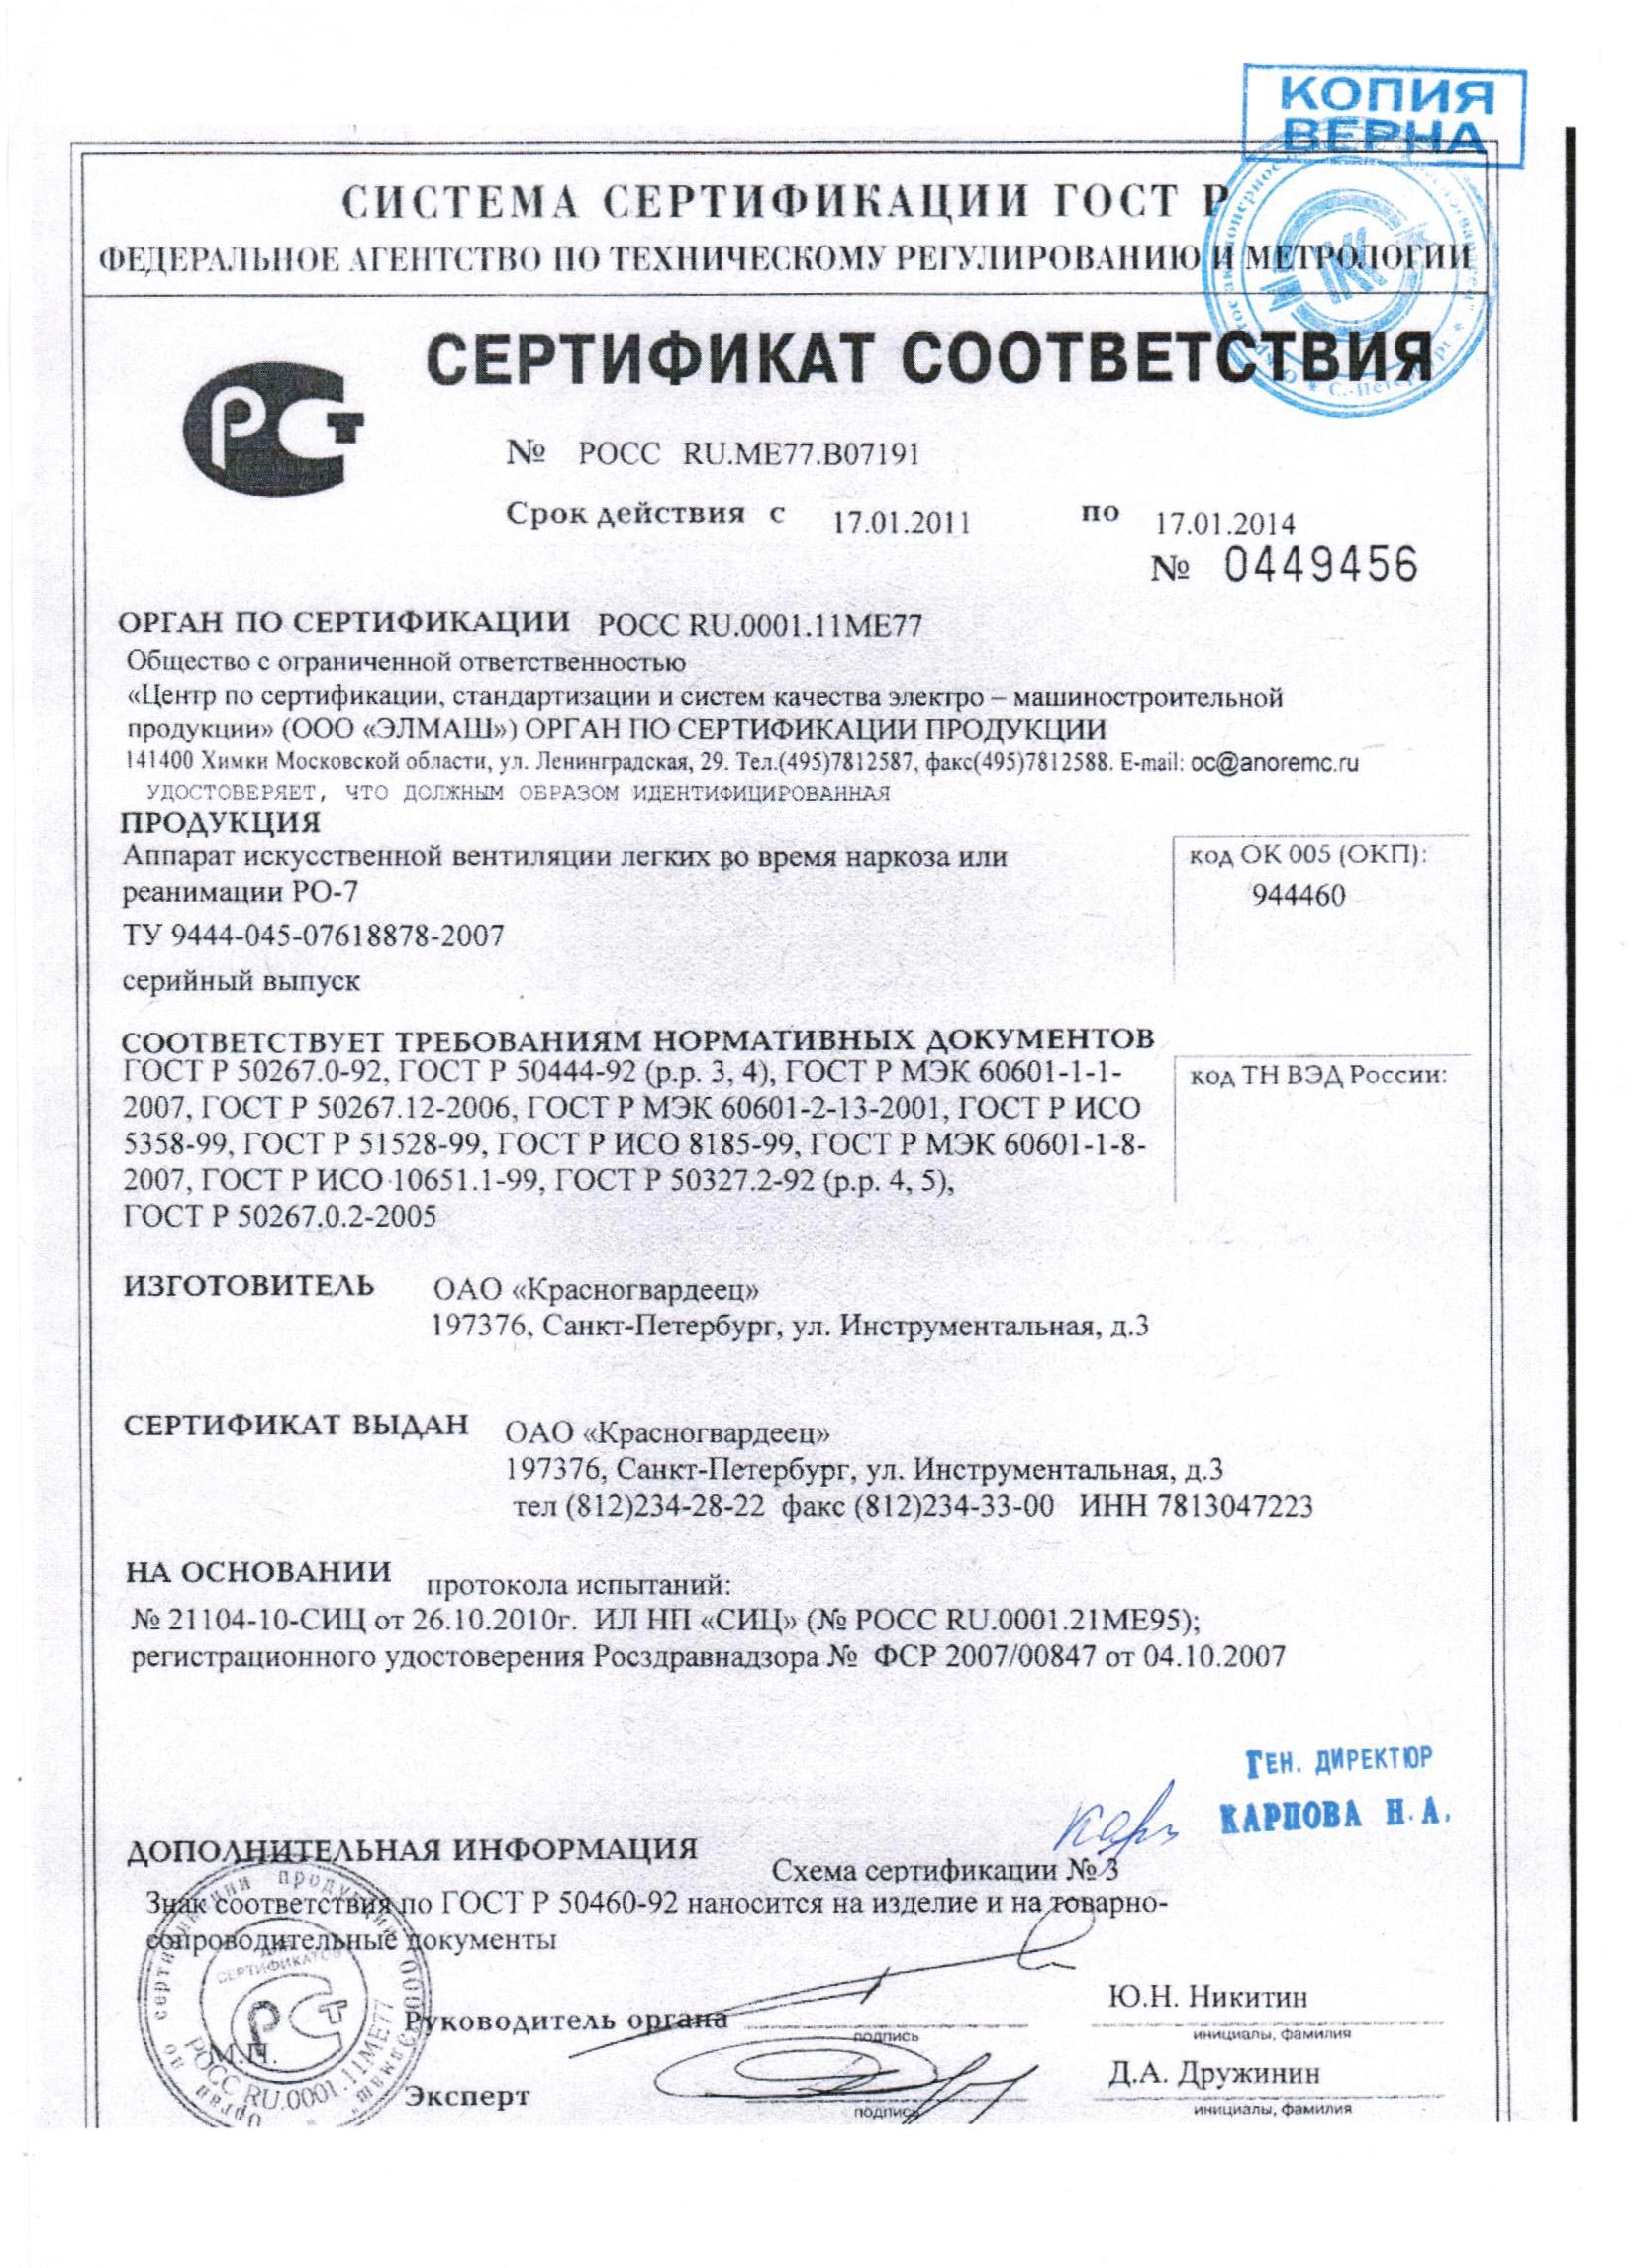 сертификат РО-7 аппарат ИВЛ